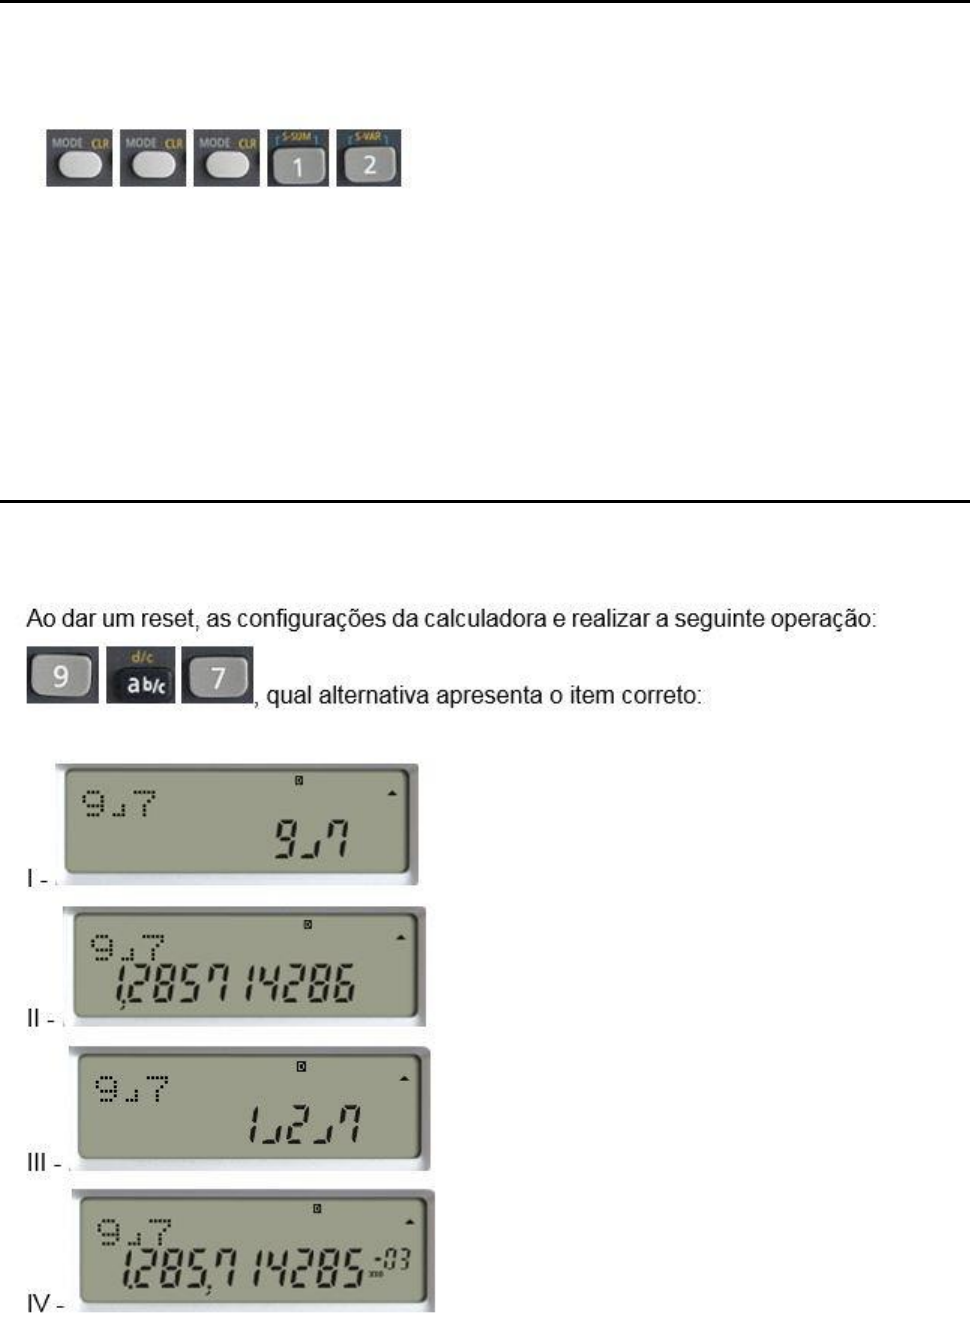 essa calculadora n serve pra fazer porva de notação cientifica né? alguém  indica uma calculadora pra 